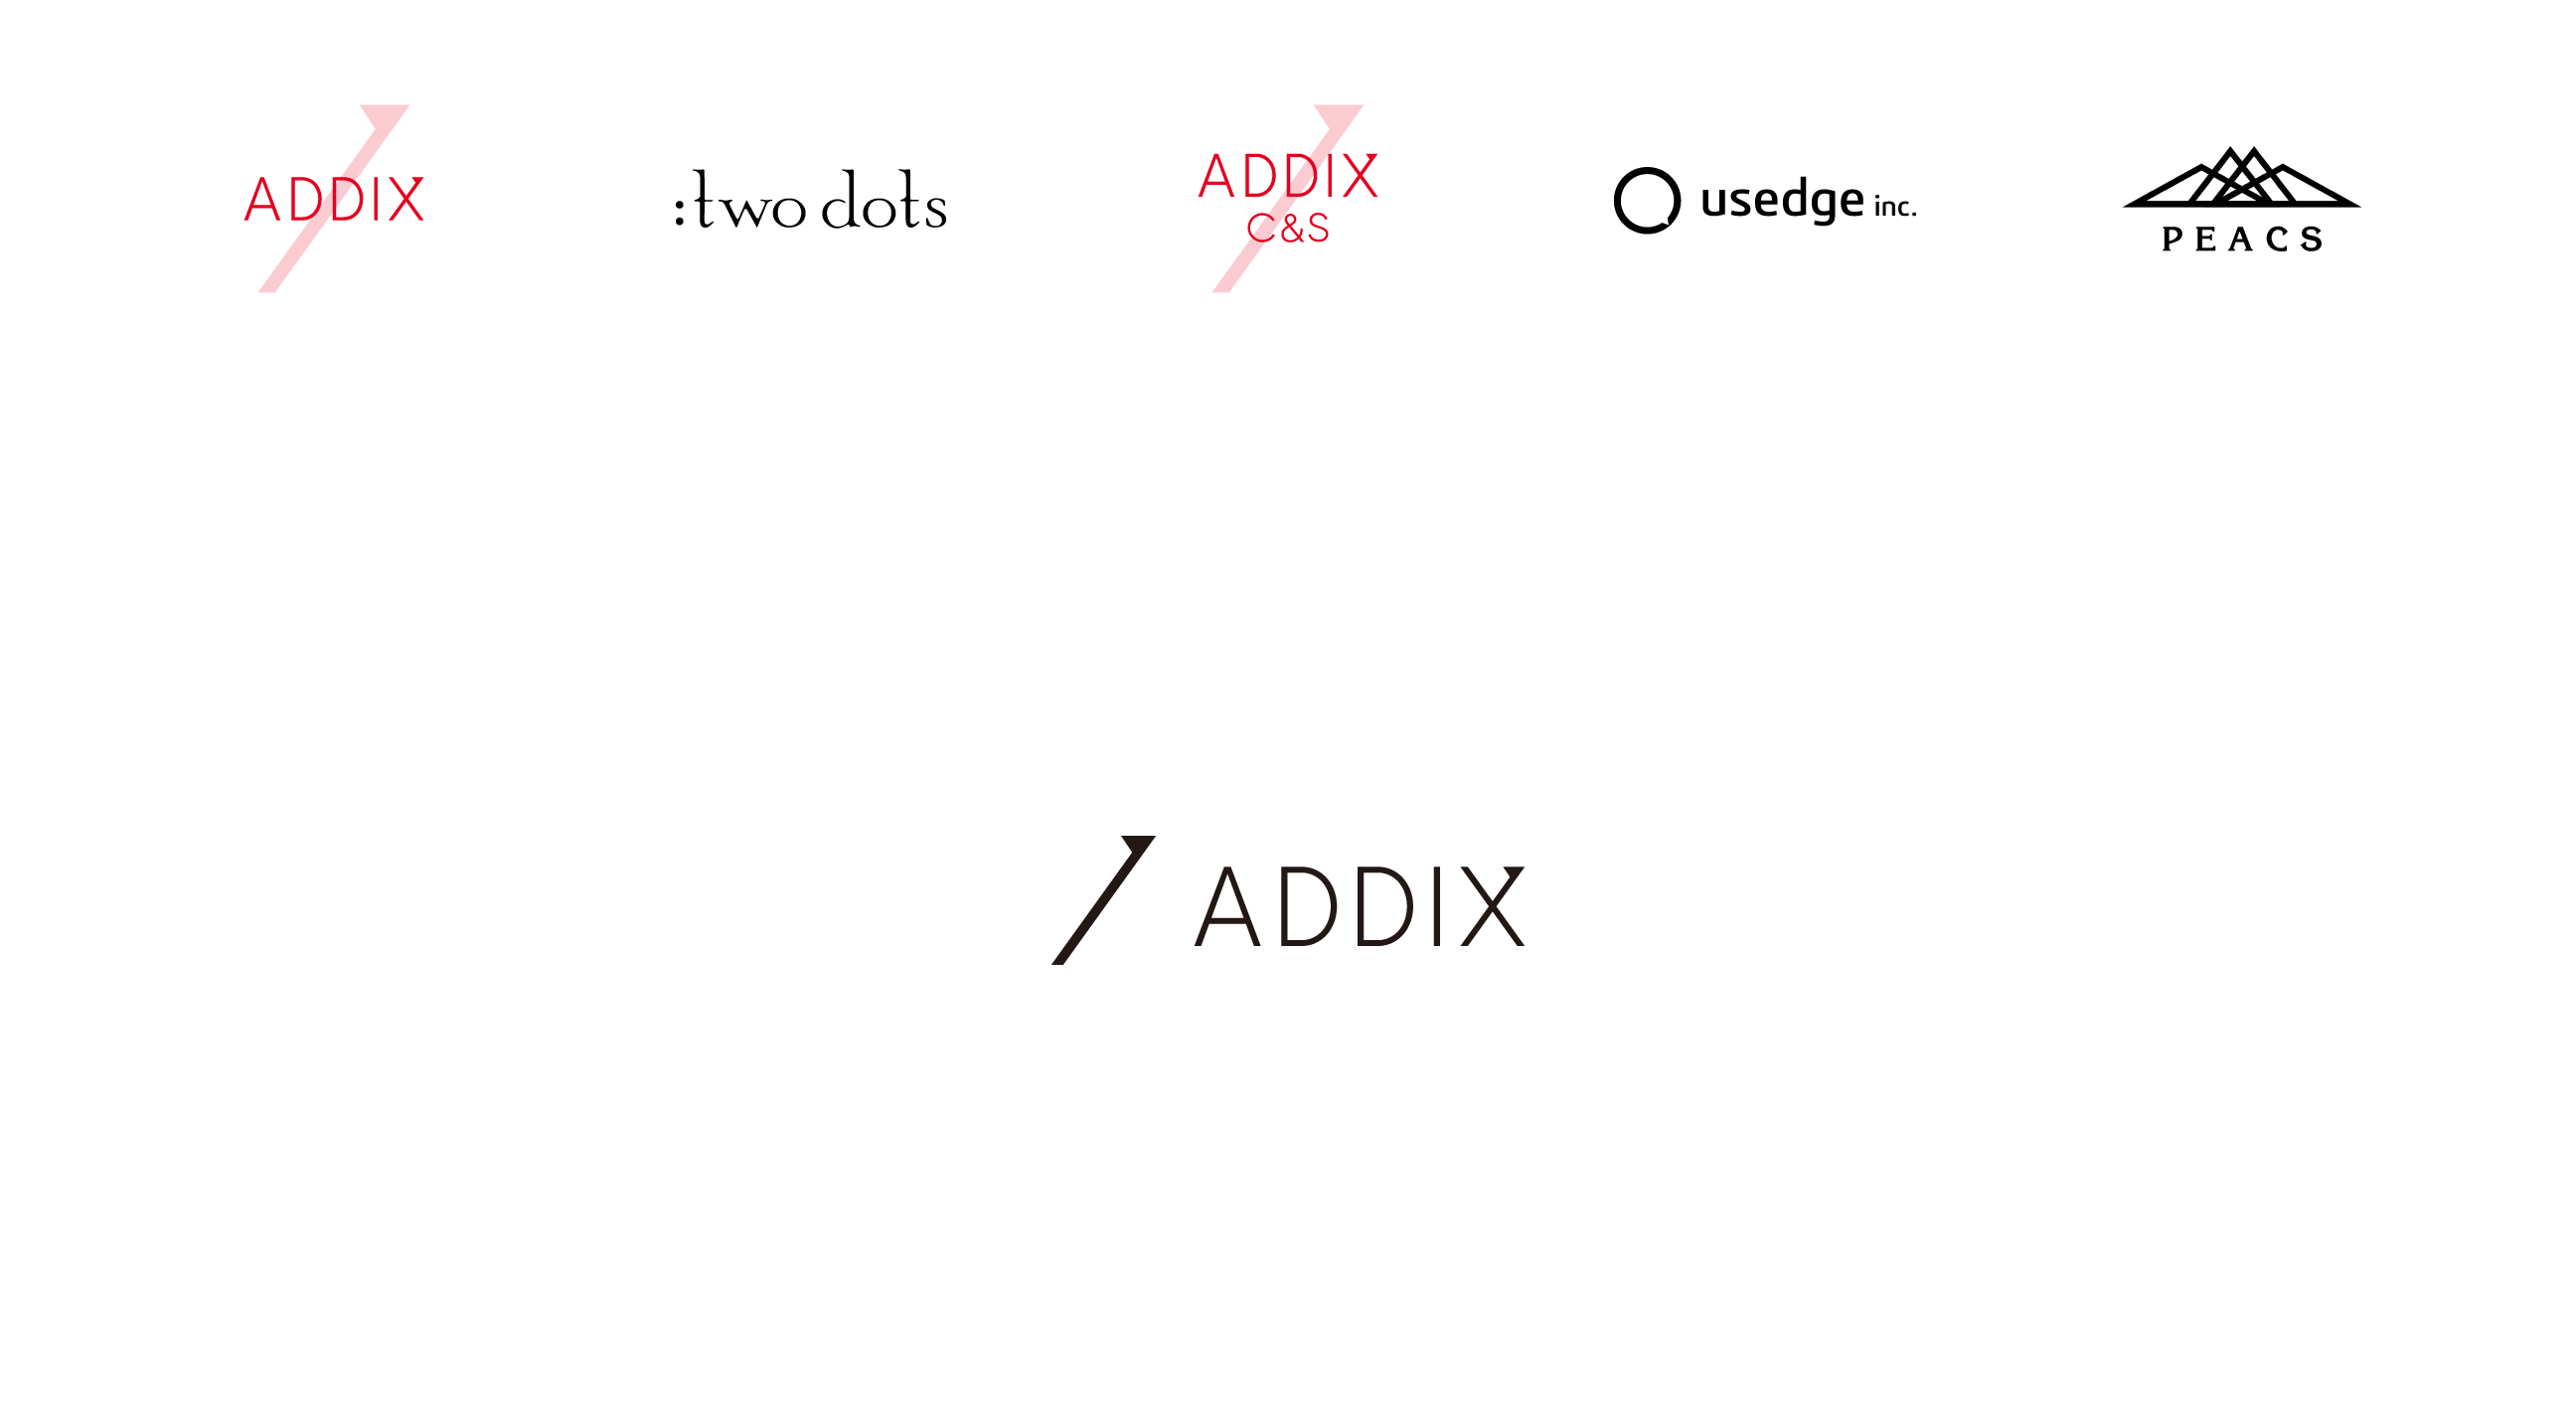 ADDIXとは